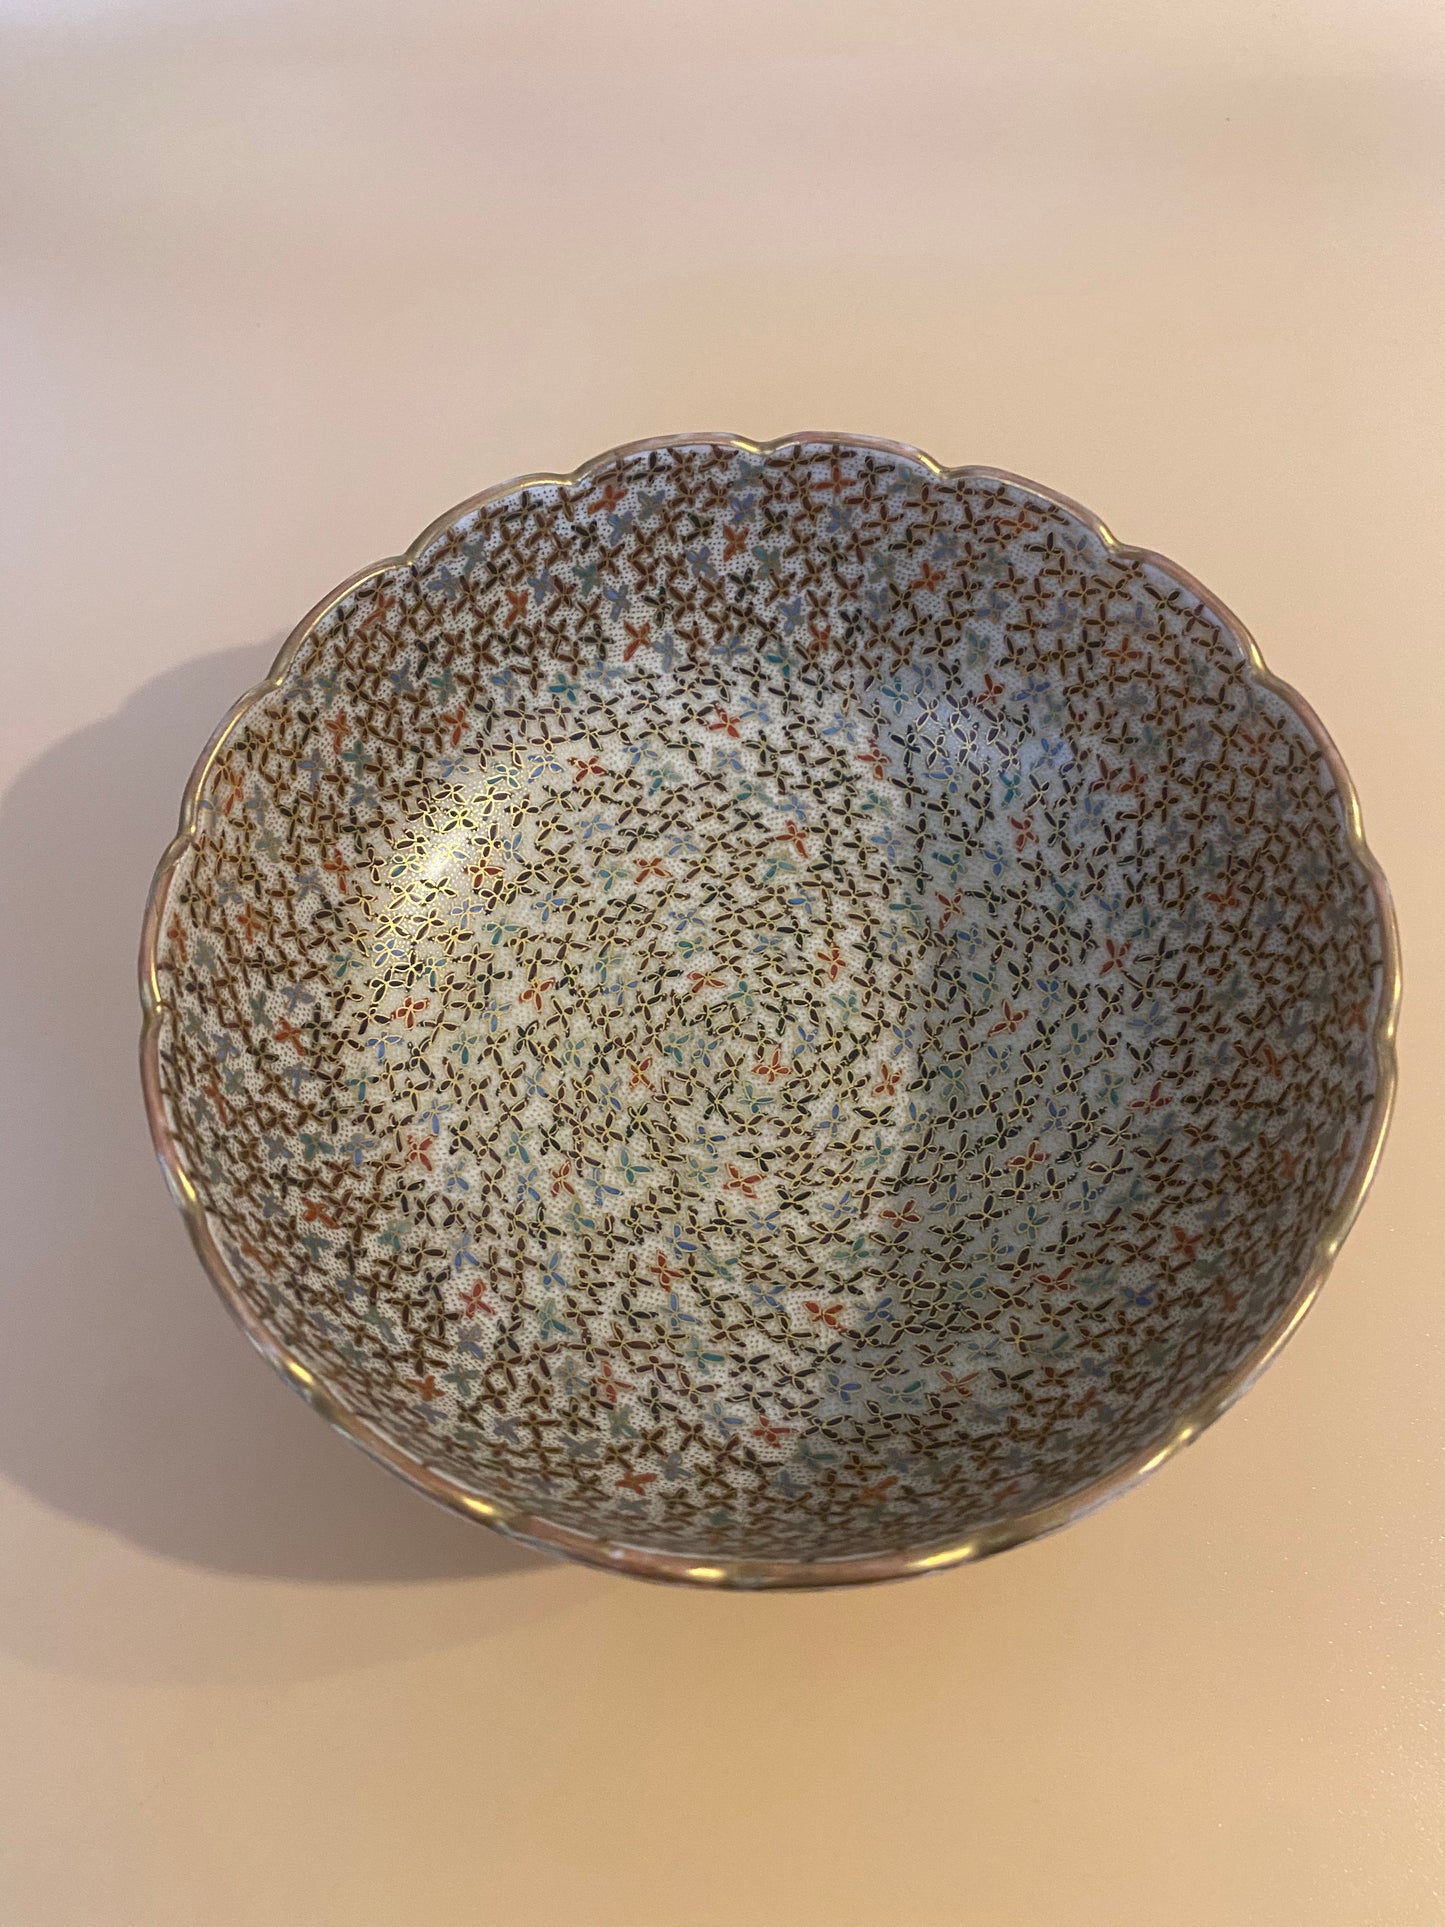 Japanese Satsuma Bowl